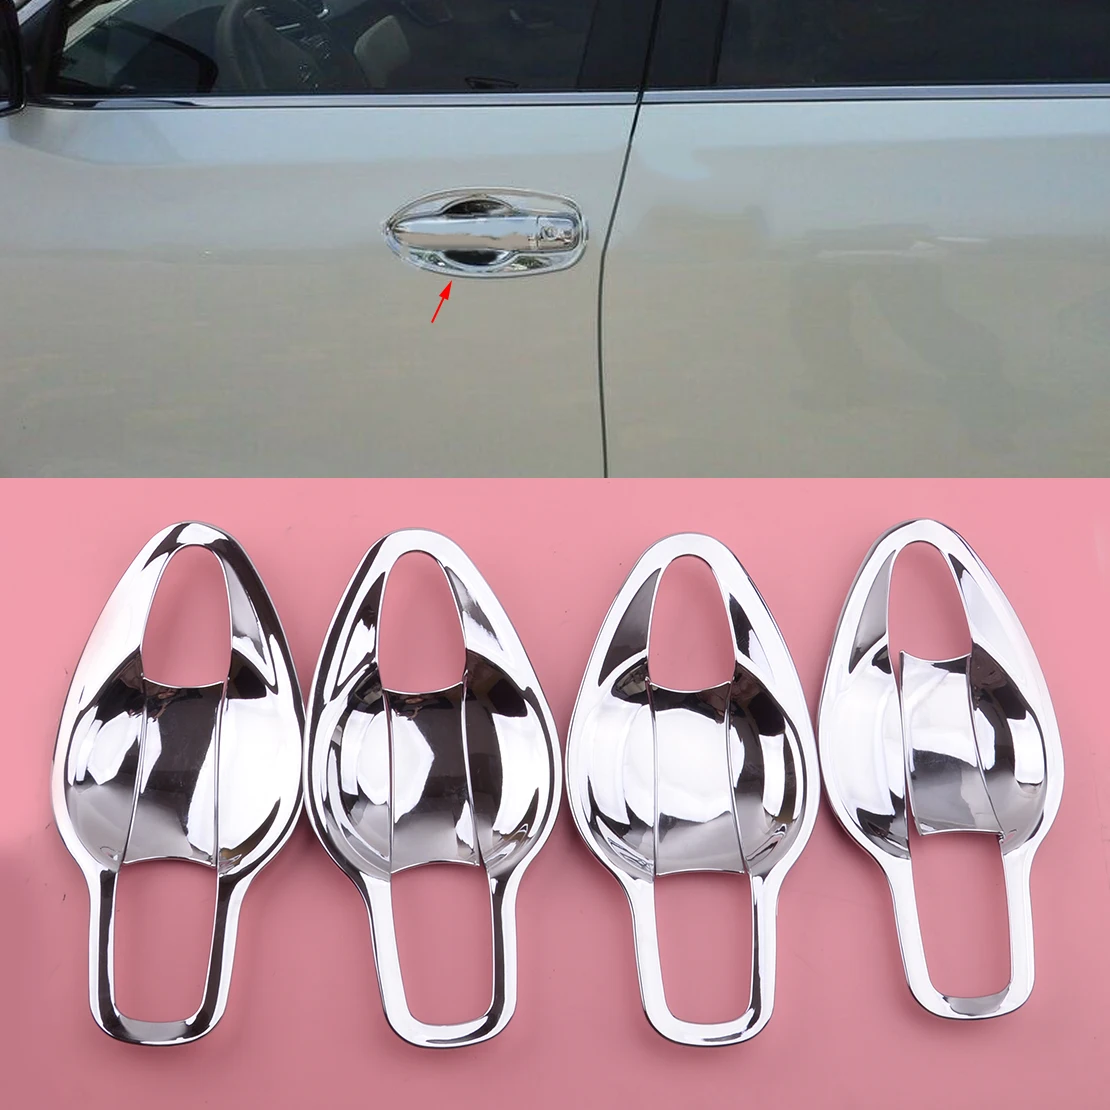 

Хром Стиль наружные двери с жалюзийными решётками ручки чаши планки защитные чехлы подходят для Nissan Qashqai J11 2014 2015 2016 2017 2018 2019 2020